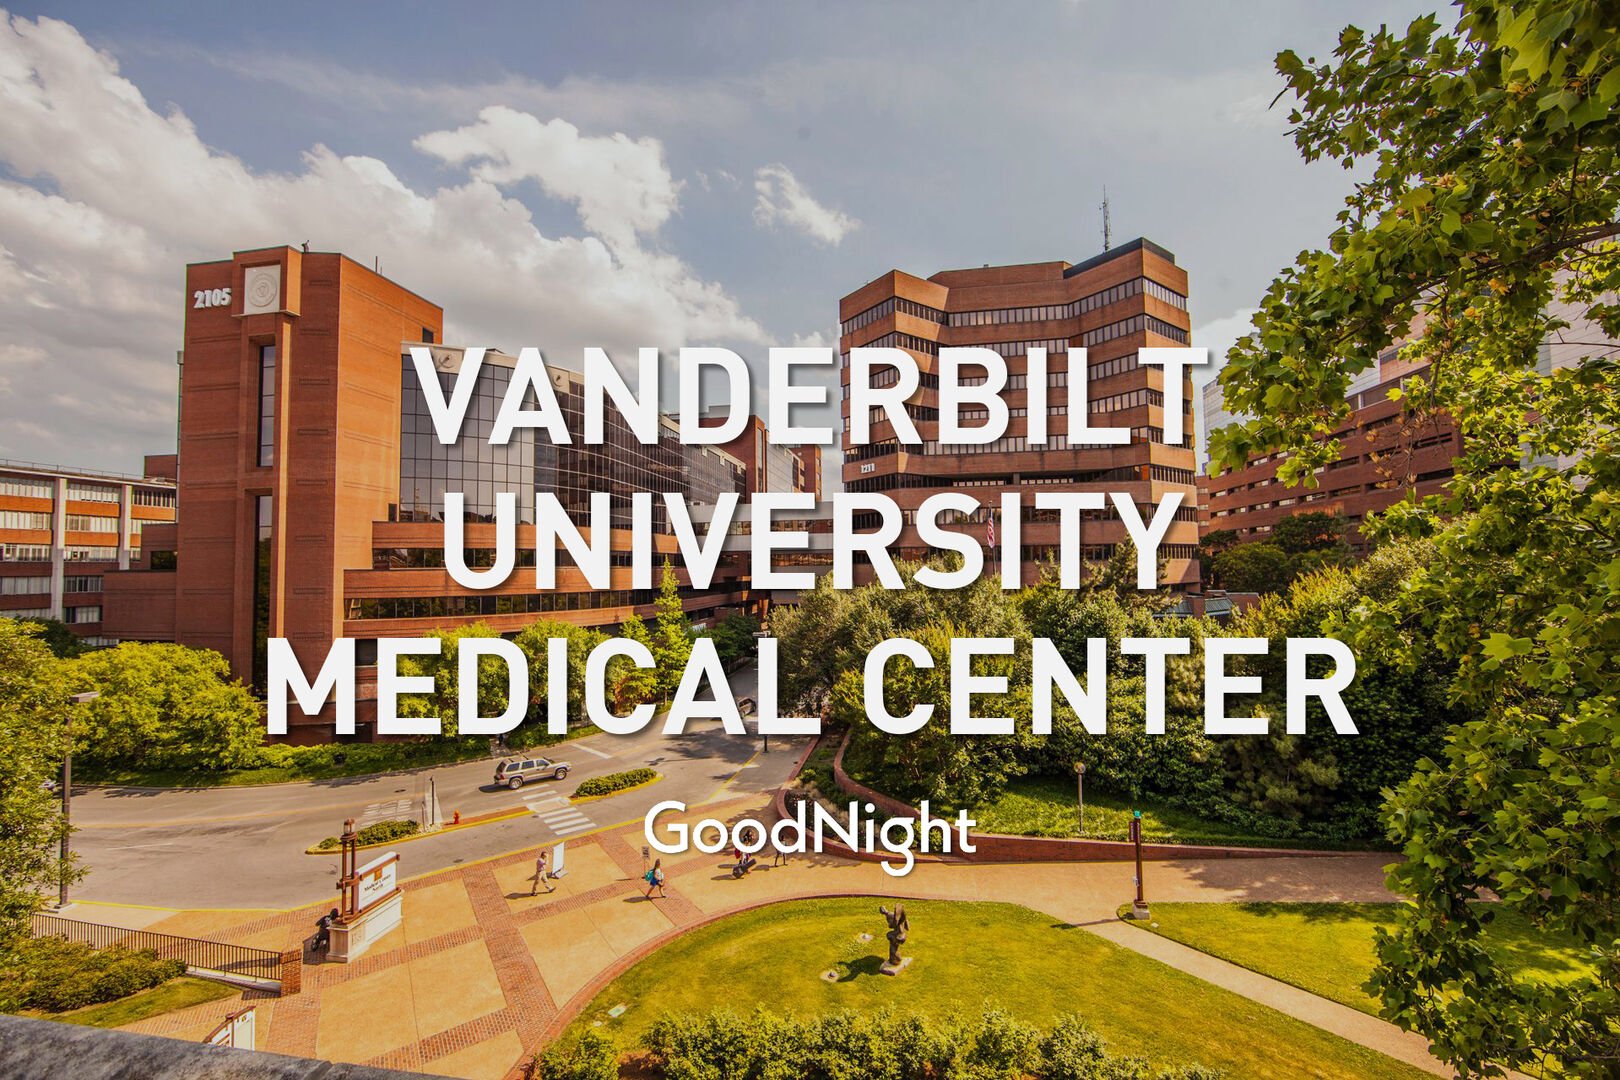 5 mins: Vanderbilt University Medical Center